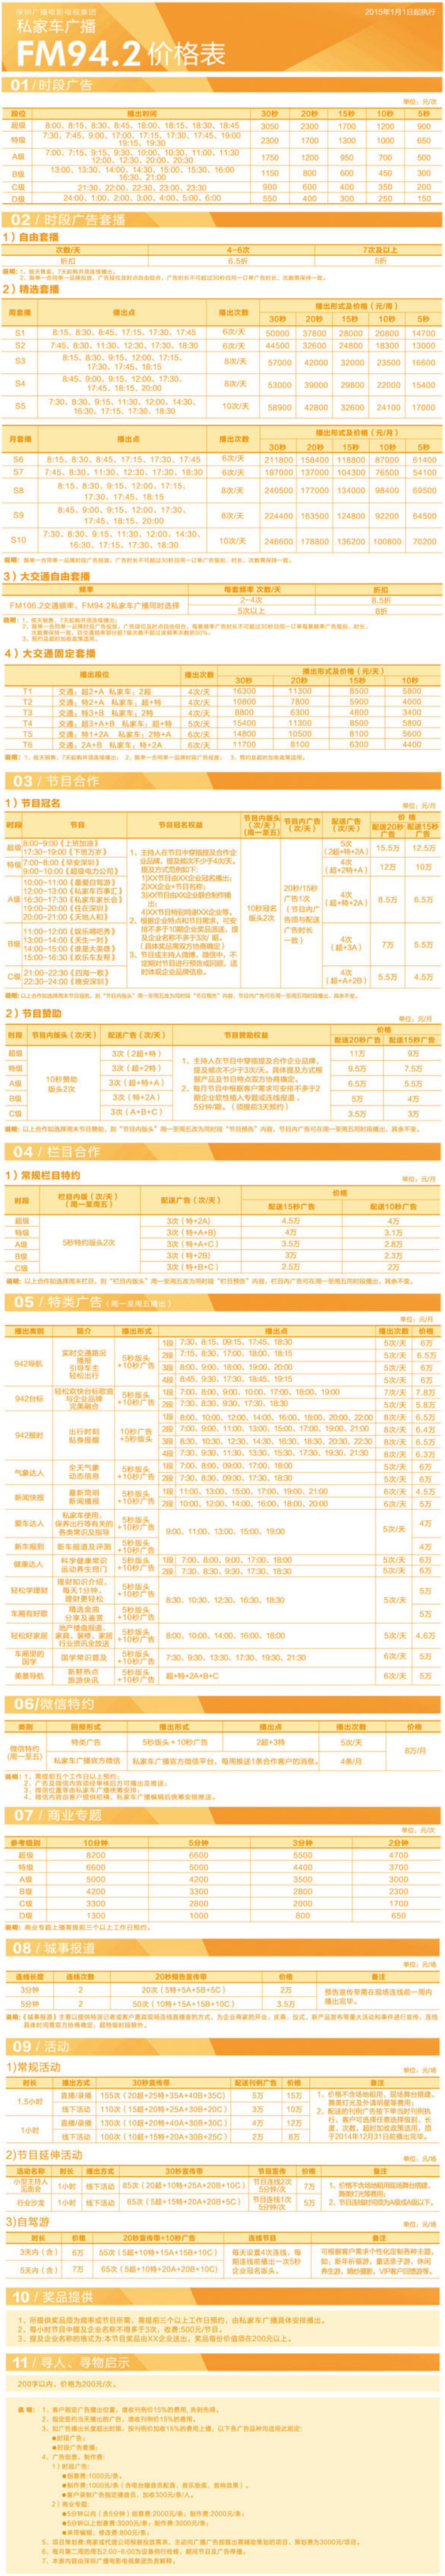 2015深圳人民广播电台生活频率 FM94.2广告报价表.jpg